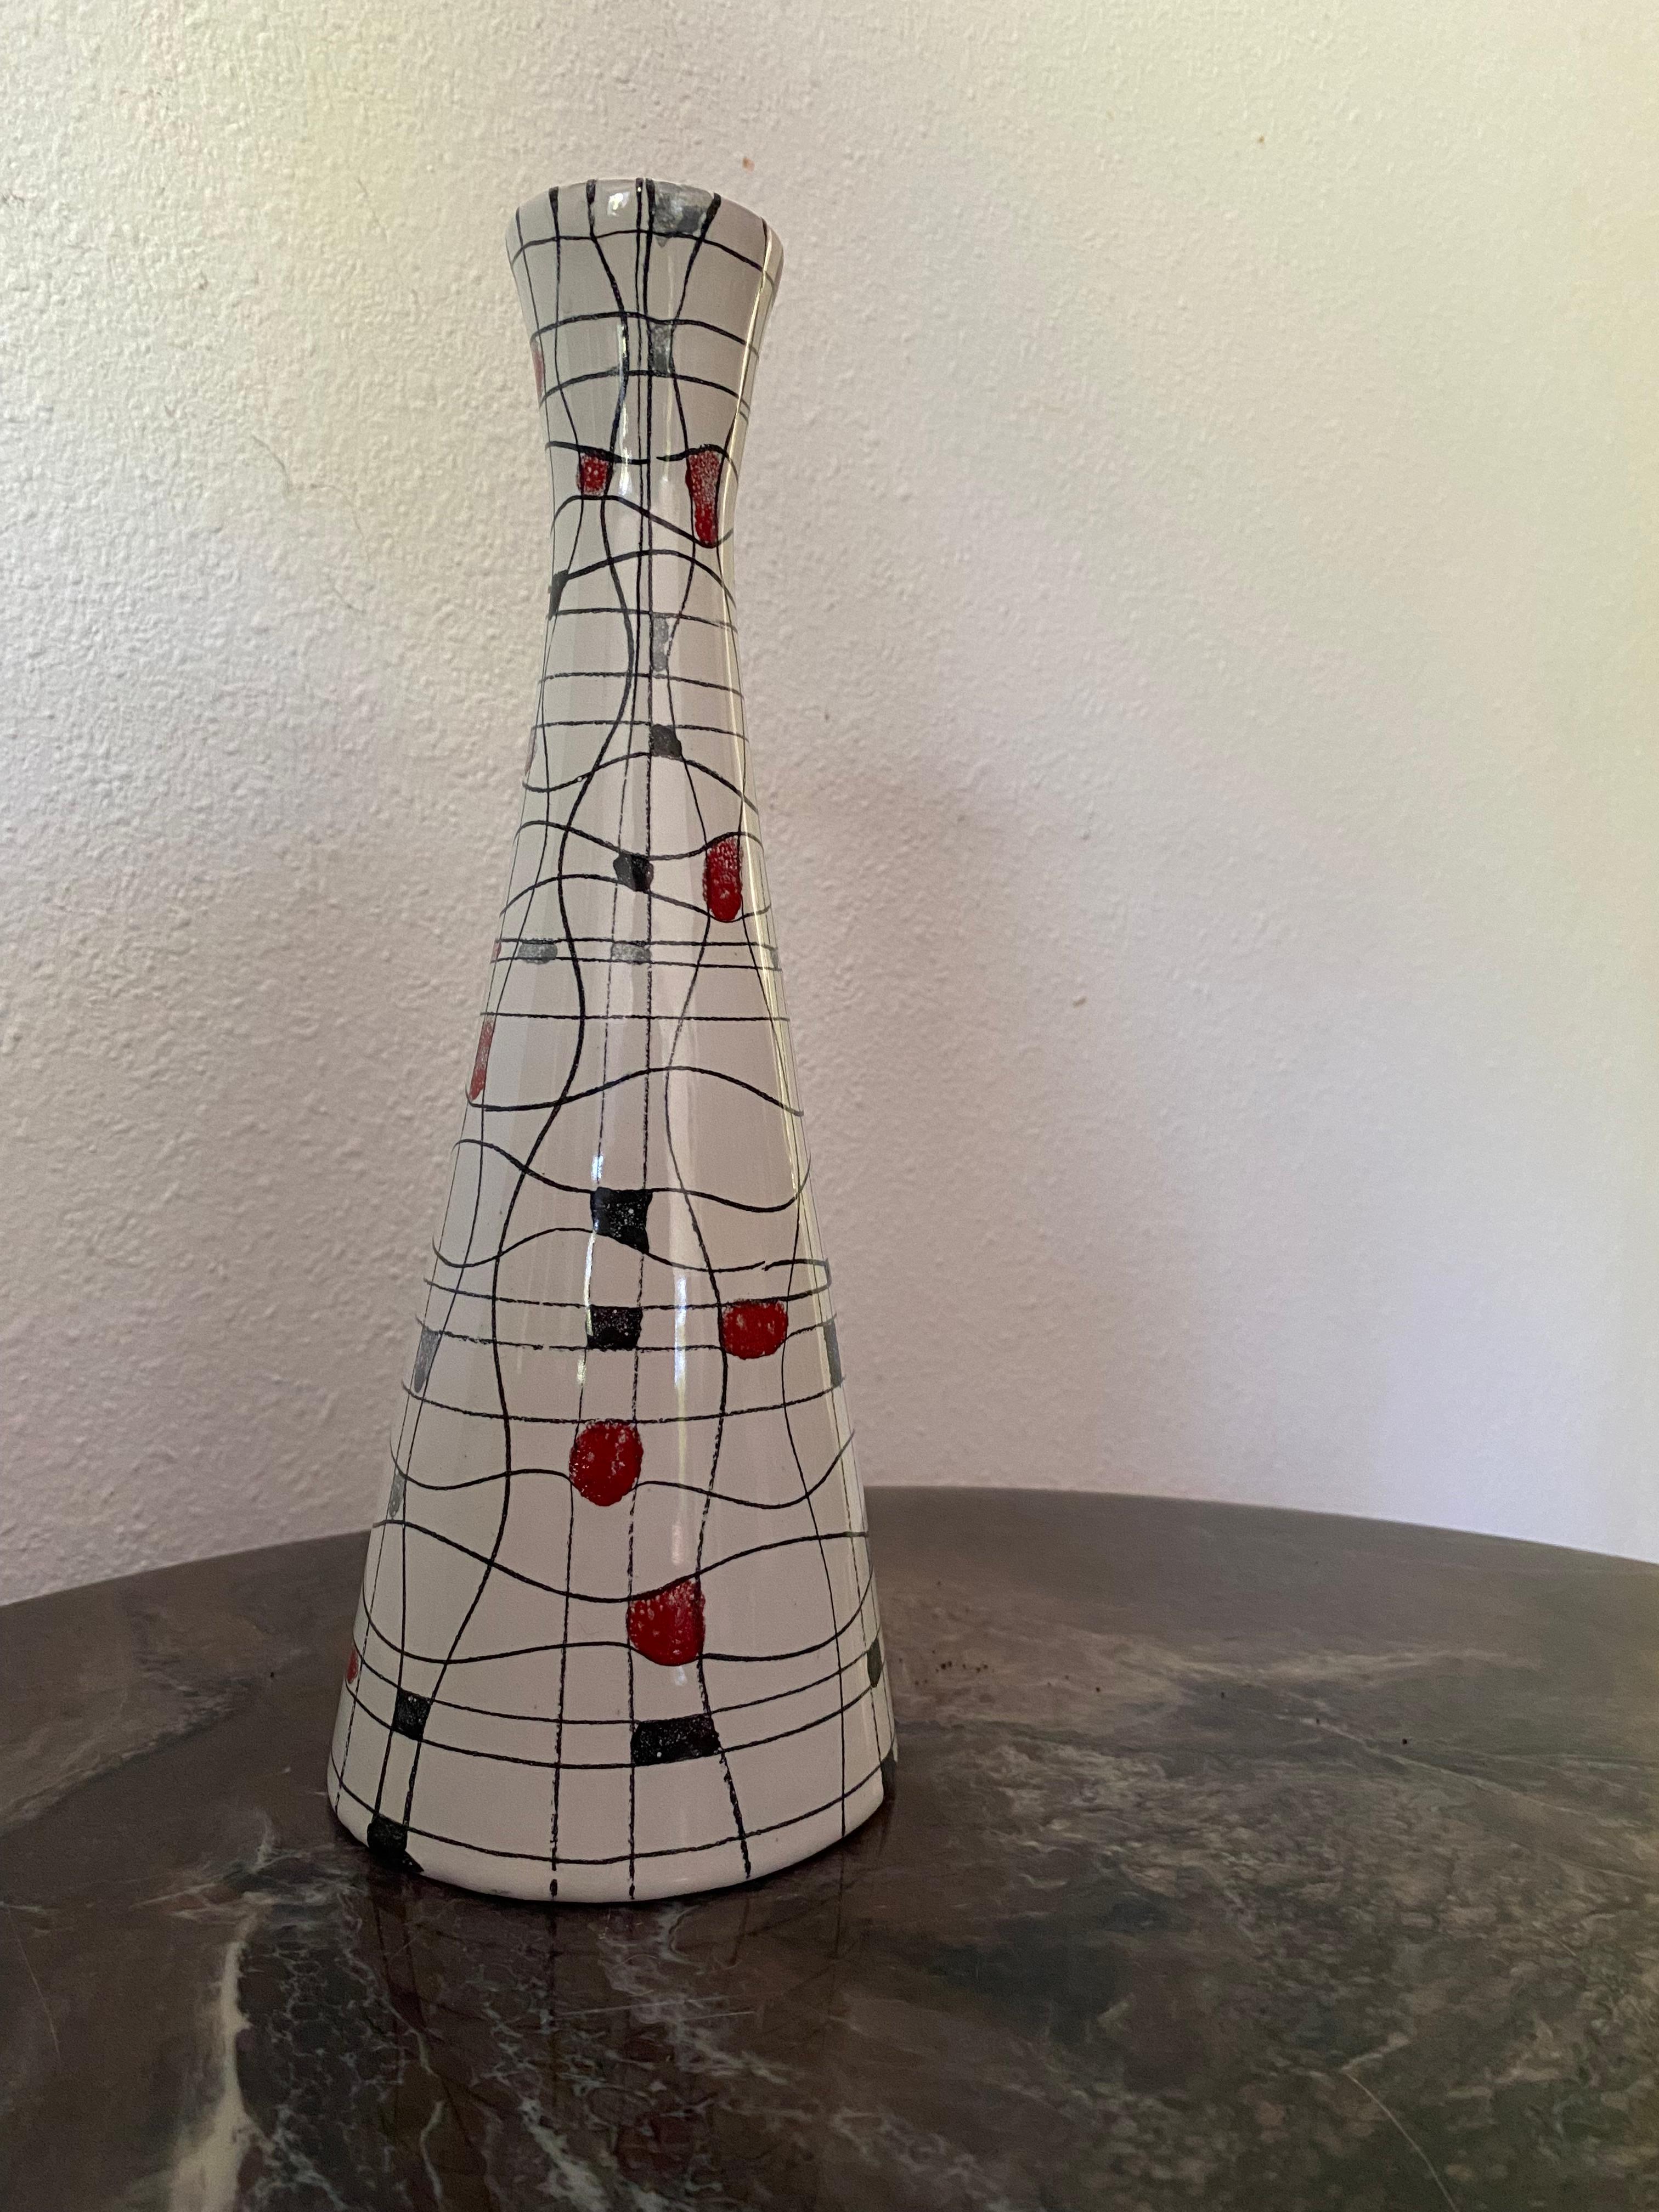 Vase en céramique Bistossi de style moderne du milieu du siècle, avec un motif de mots croisés stylisés composé de lignes sinueuses et de blocs carrés en rouge, jaune, gris bleu et noir sur un fond blanc glacé à la texture douce. 
